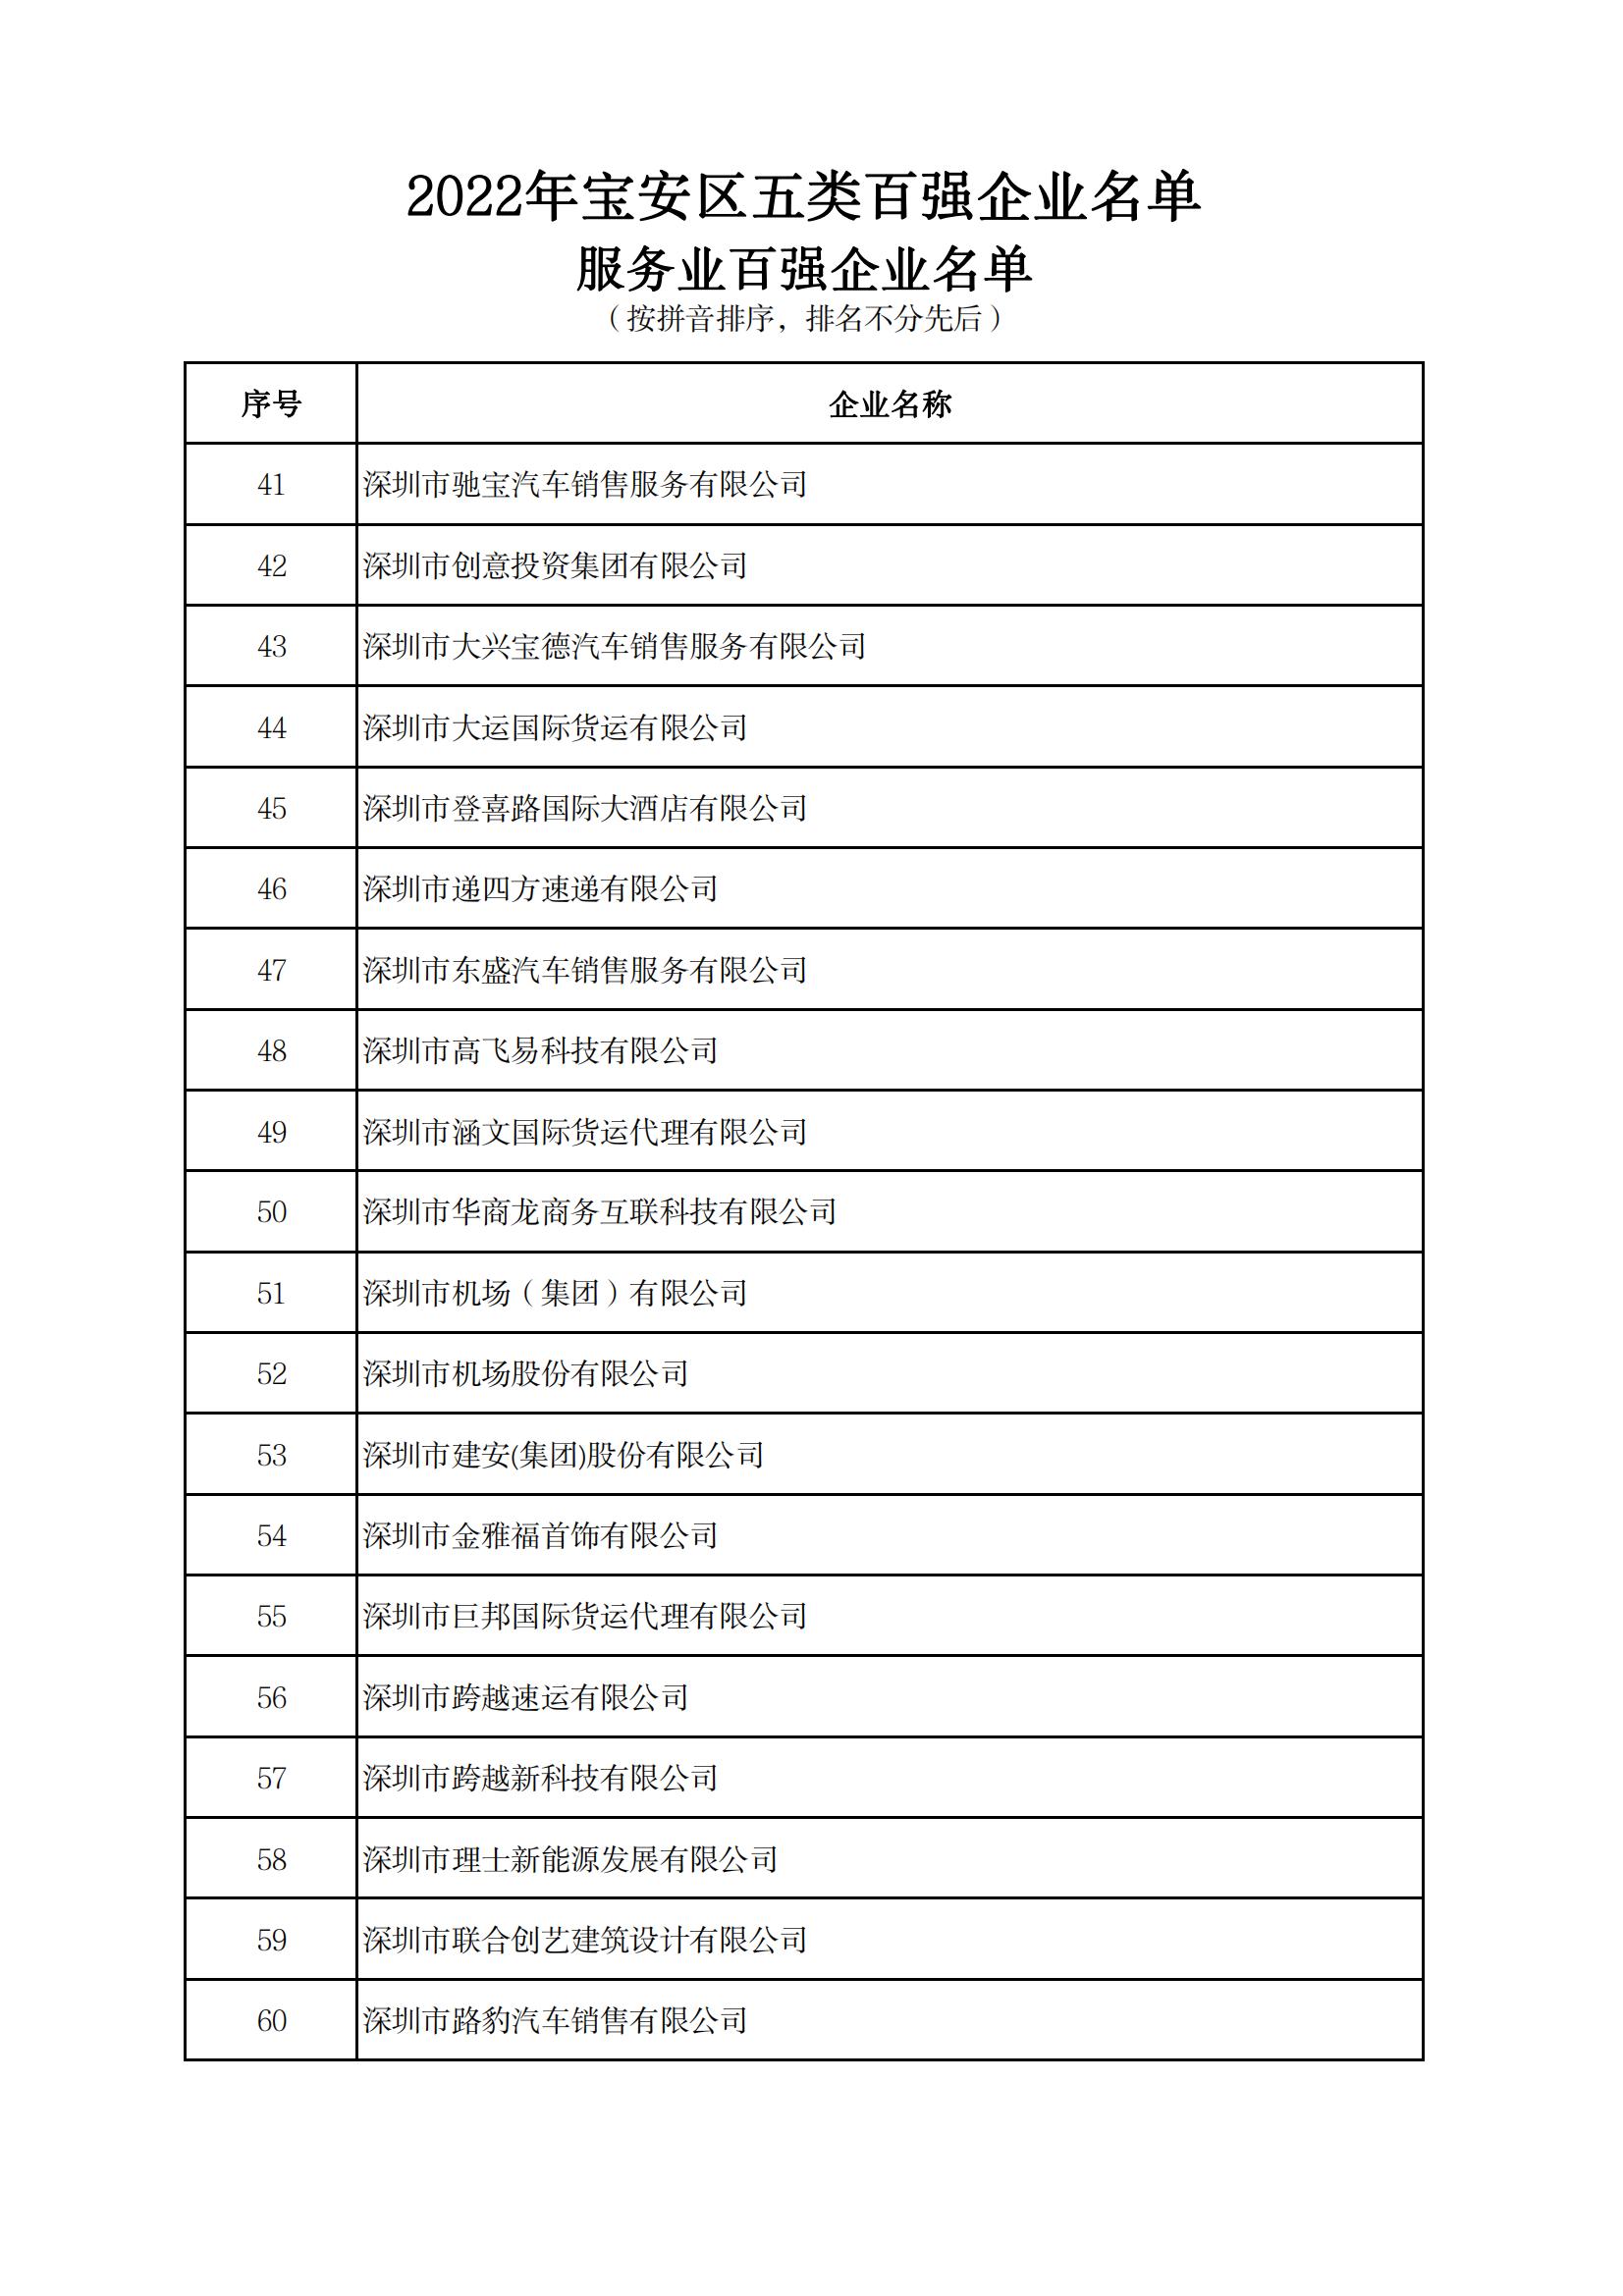 附件：2022年宝安区五类百强企业名单_12.jpg